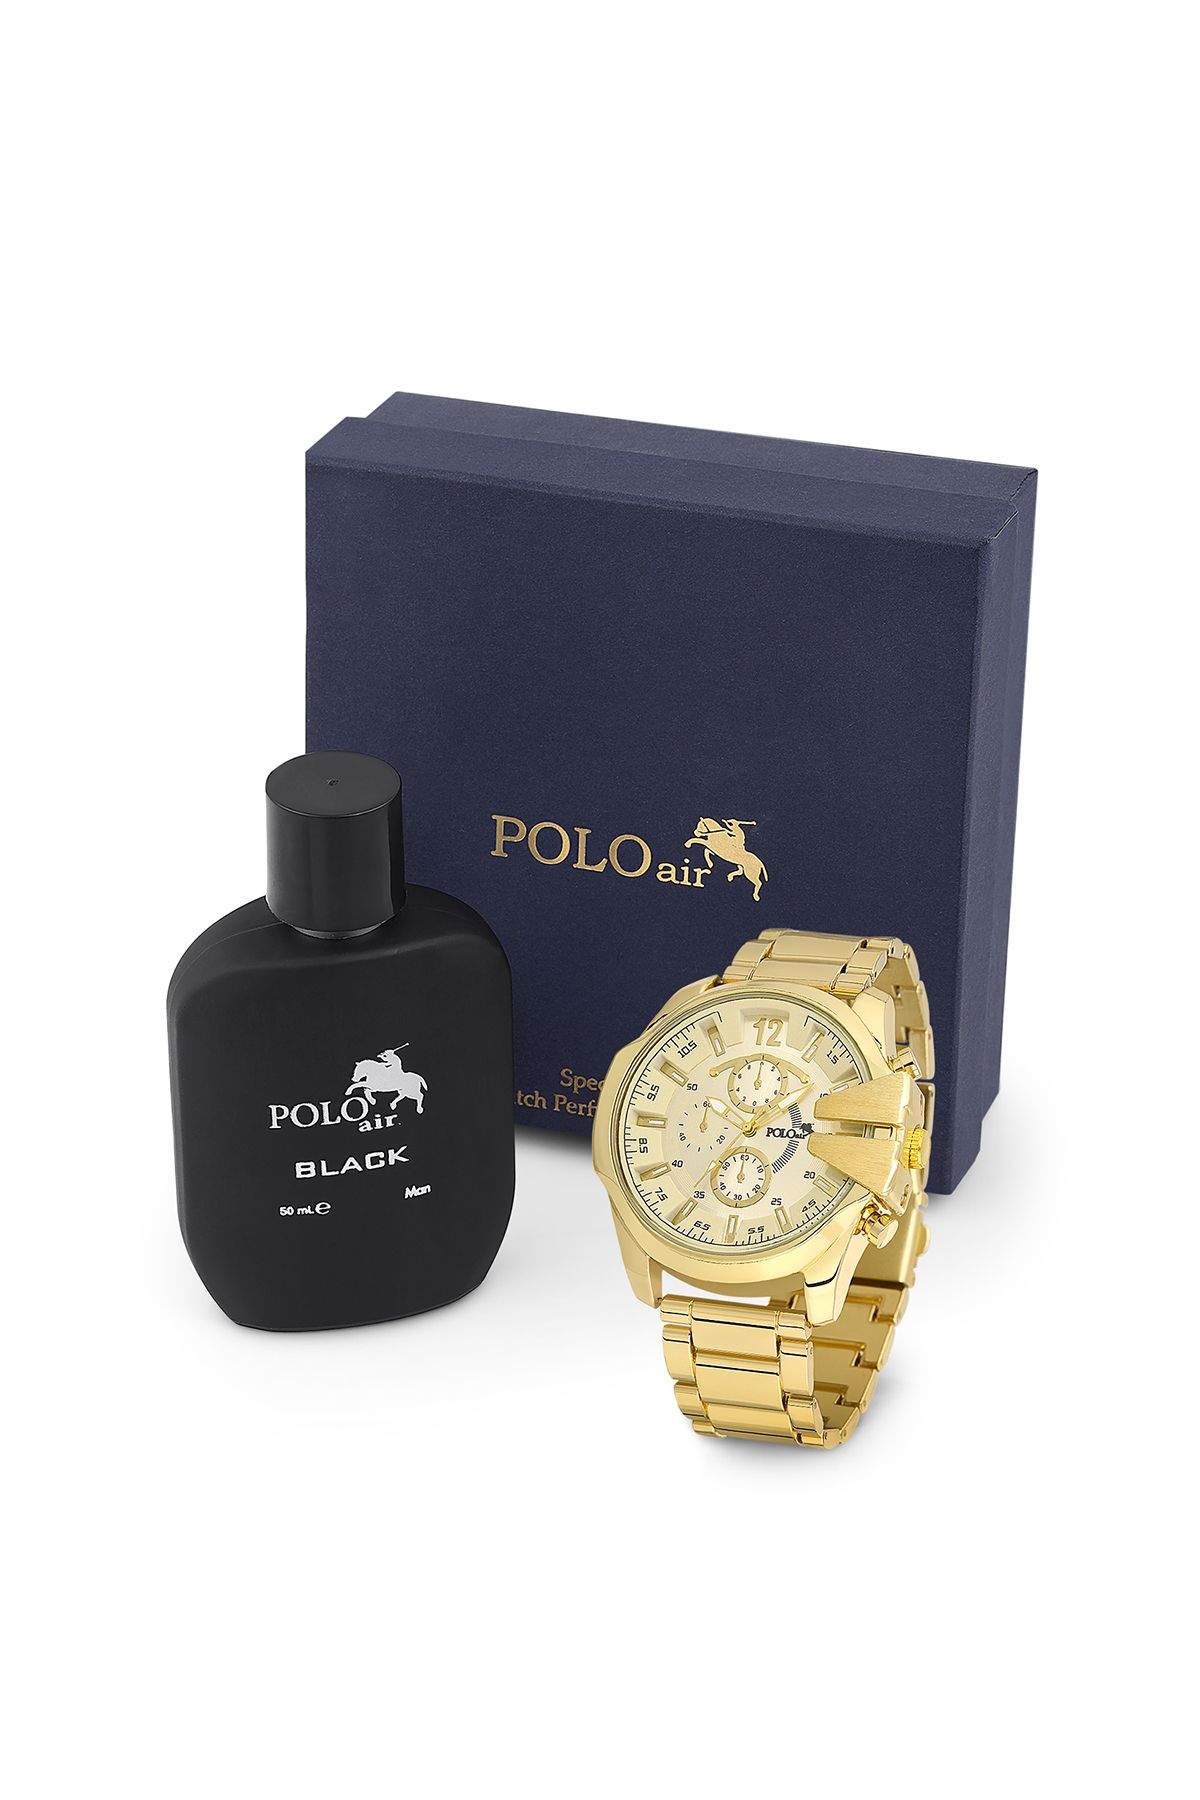 polo air Erkek Kol Saati Ve Parfüm Seti Hediyelik Kutusunda Kombin Sarı Renk